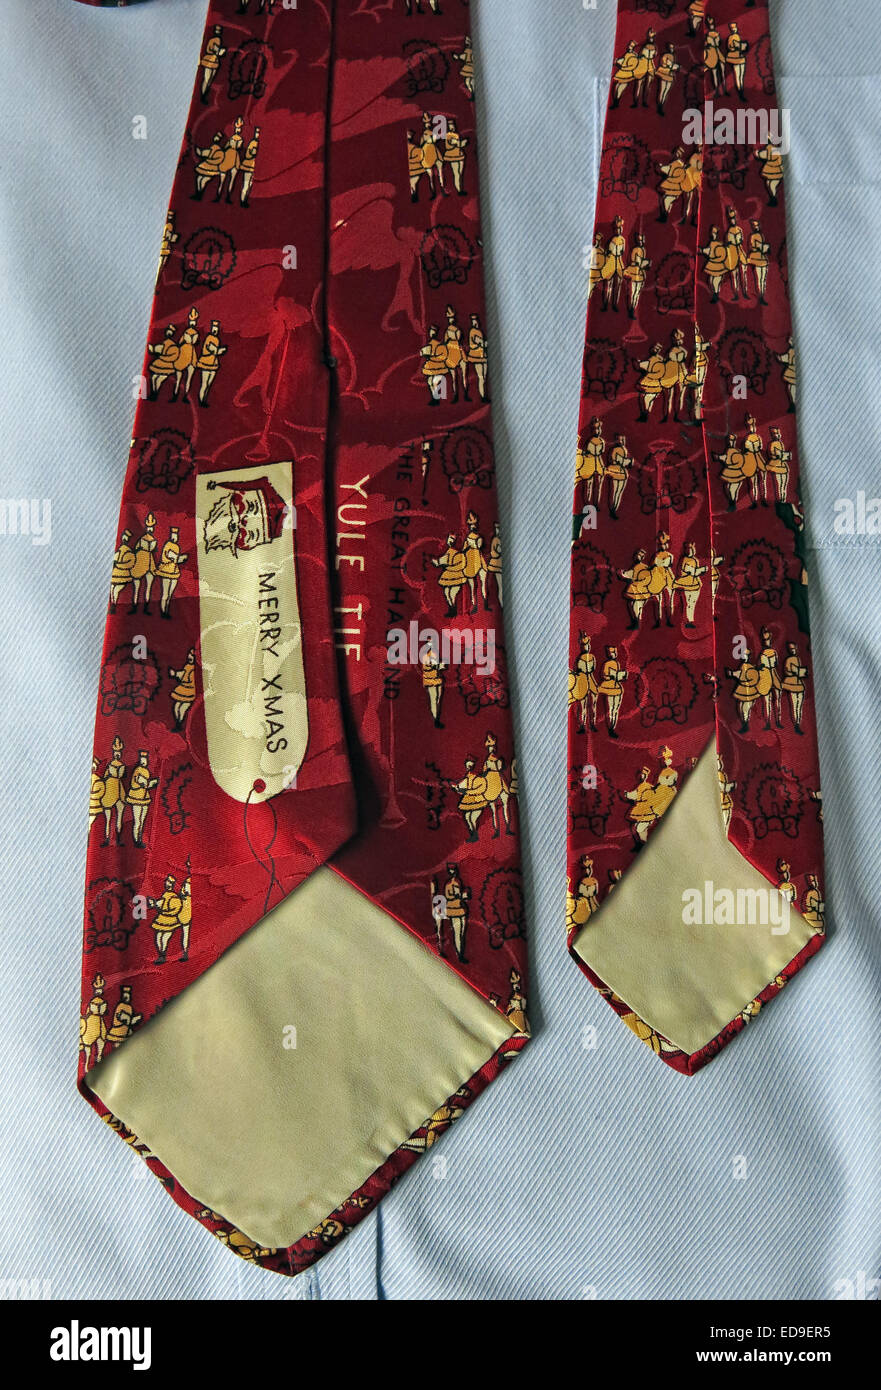 Merry Xmas vintage nous intéressant, homme neckware cravate en soie Banque D'Images